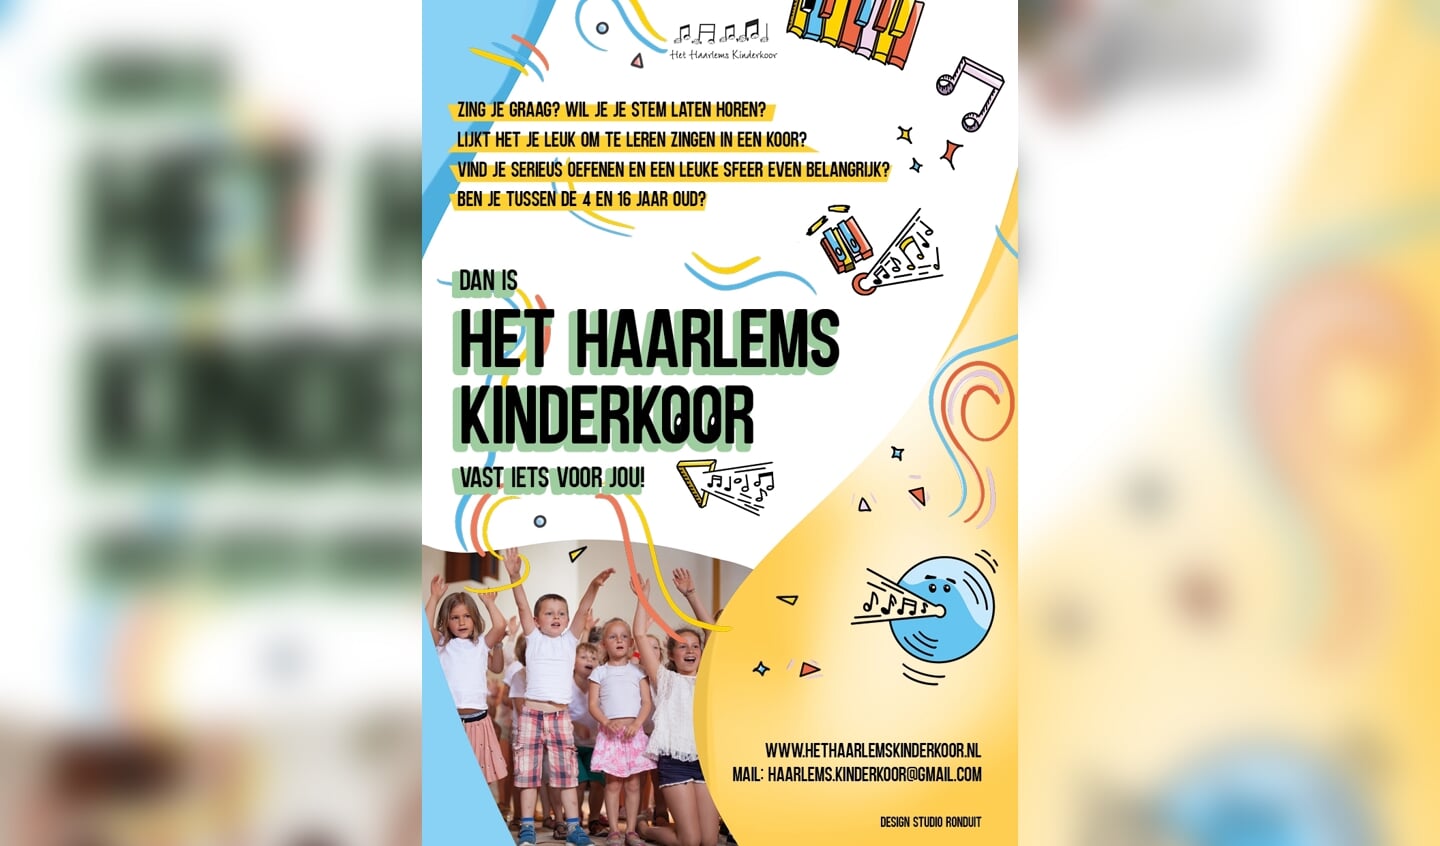 Haarlems Kinderkoor